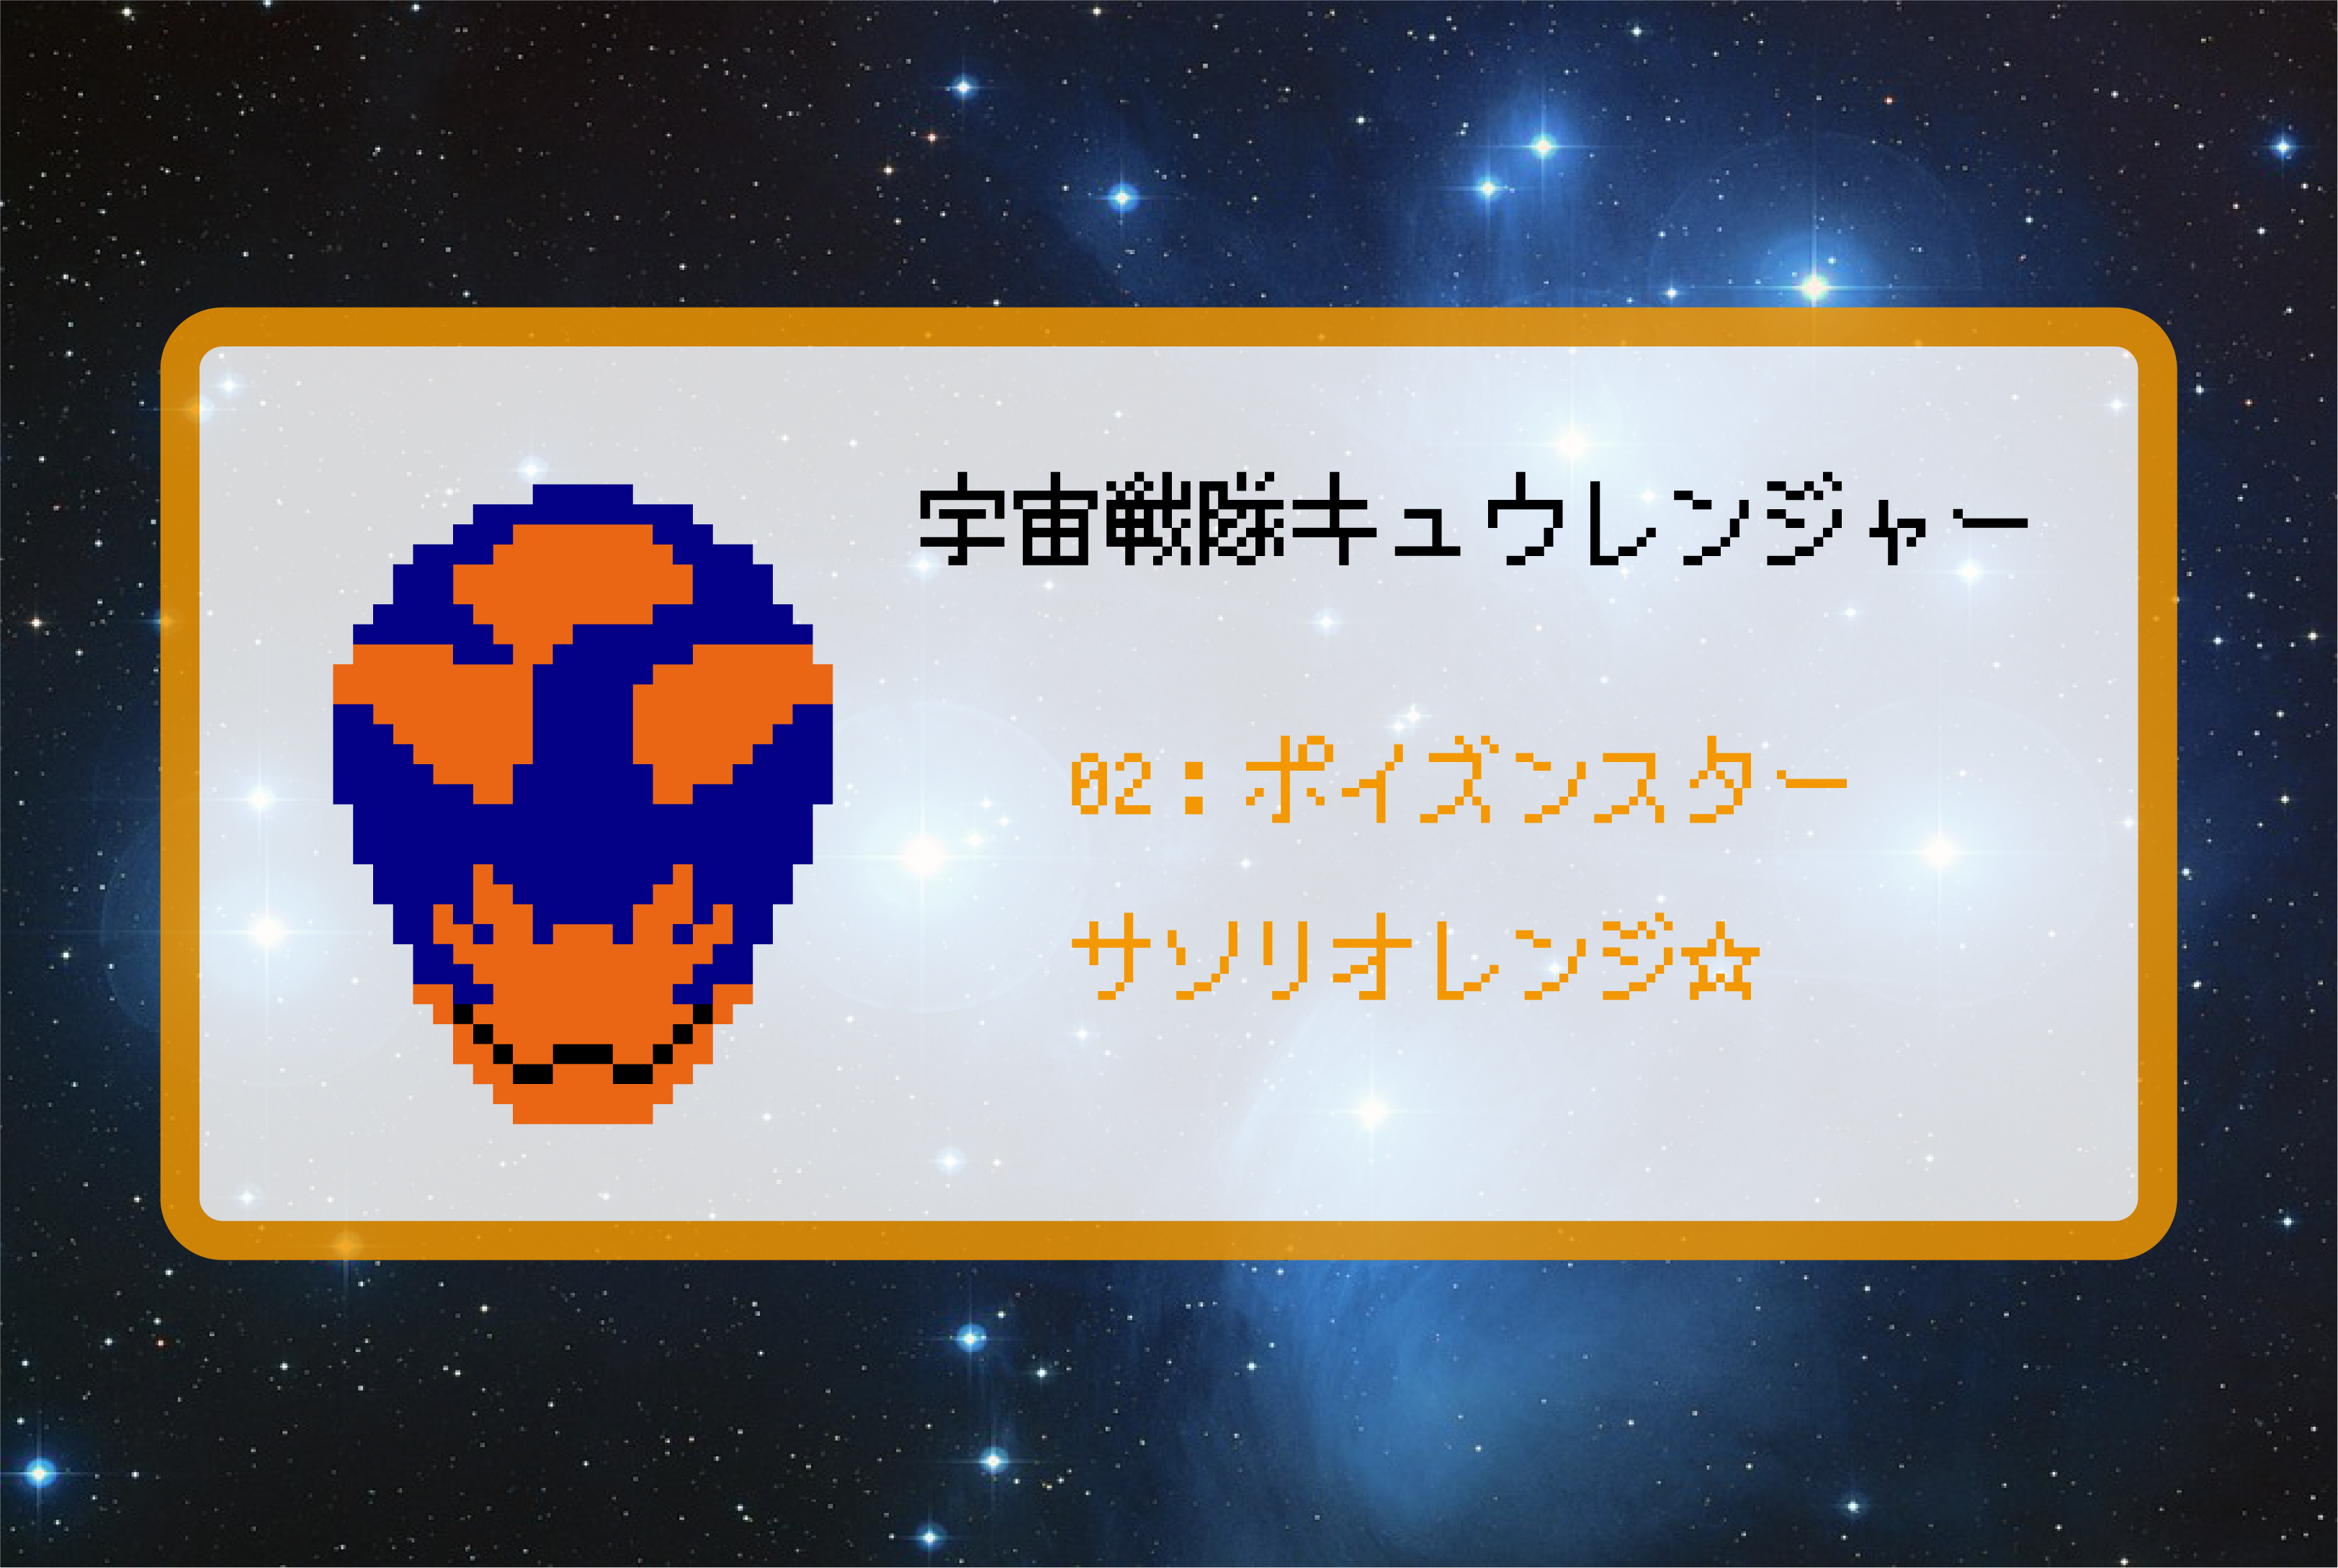 【宇宙戦隊キュウレンジャー】サソリオレンジのアイロンビーズ図案